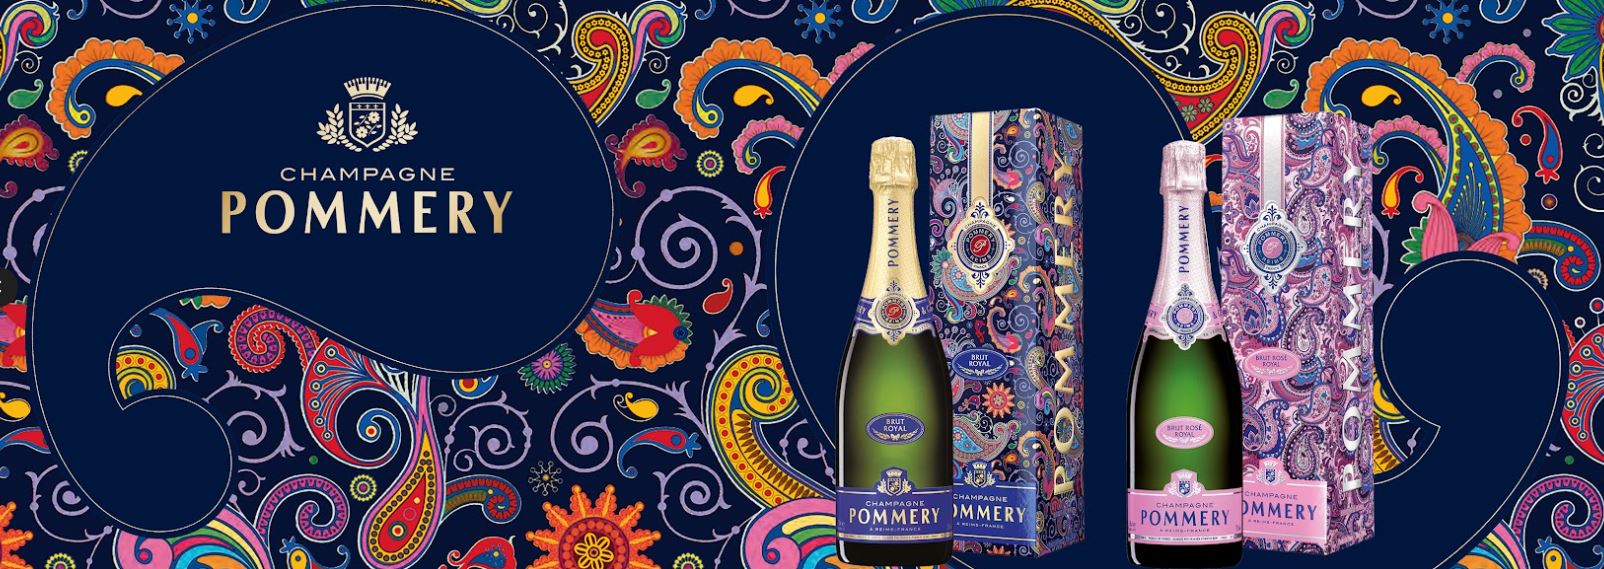 Champagne POMMERY: Kashmir im Paisley-Design - Genussportal - Das Gourmetwelten